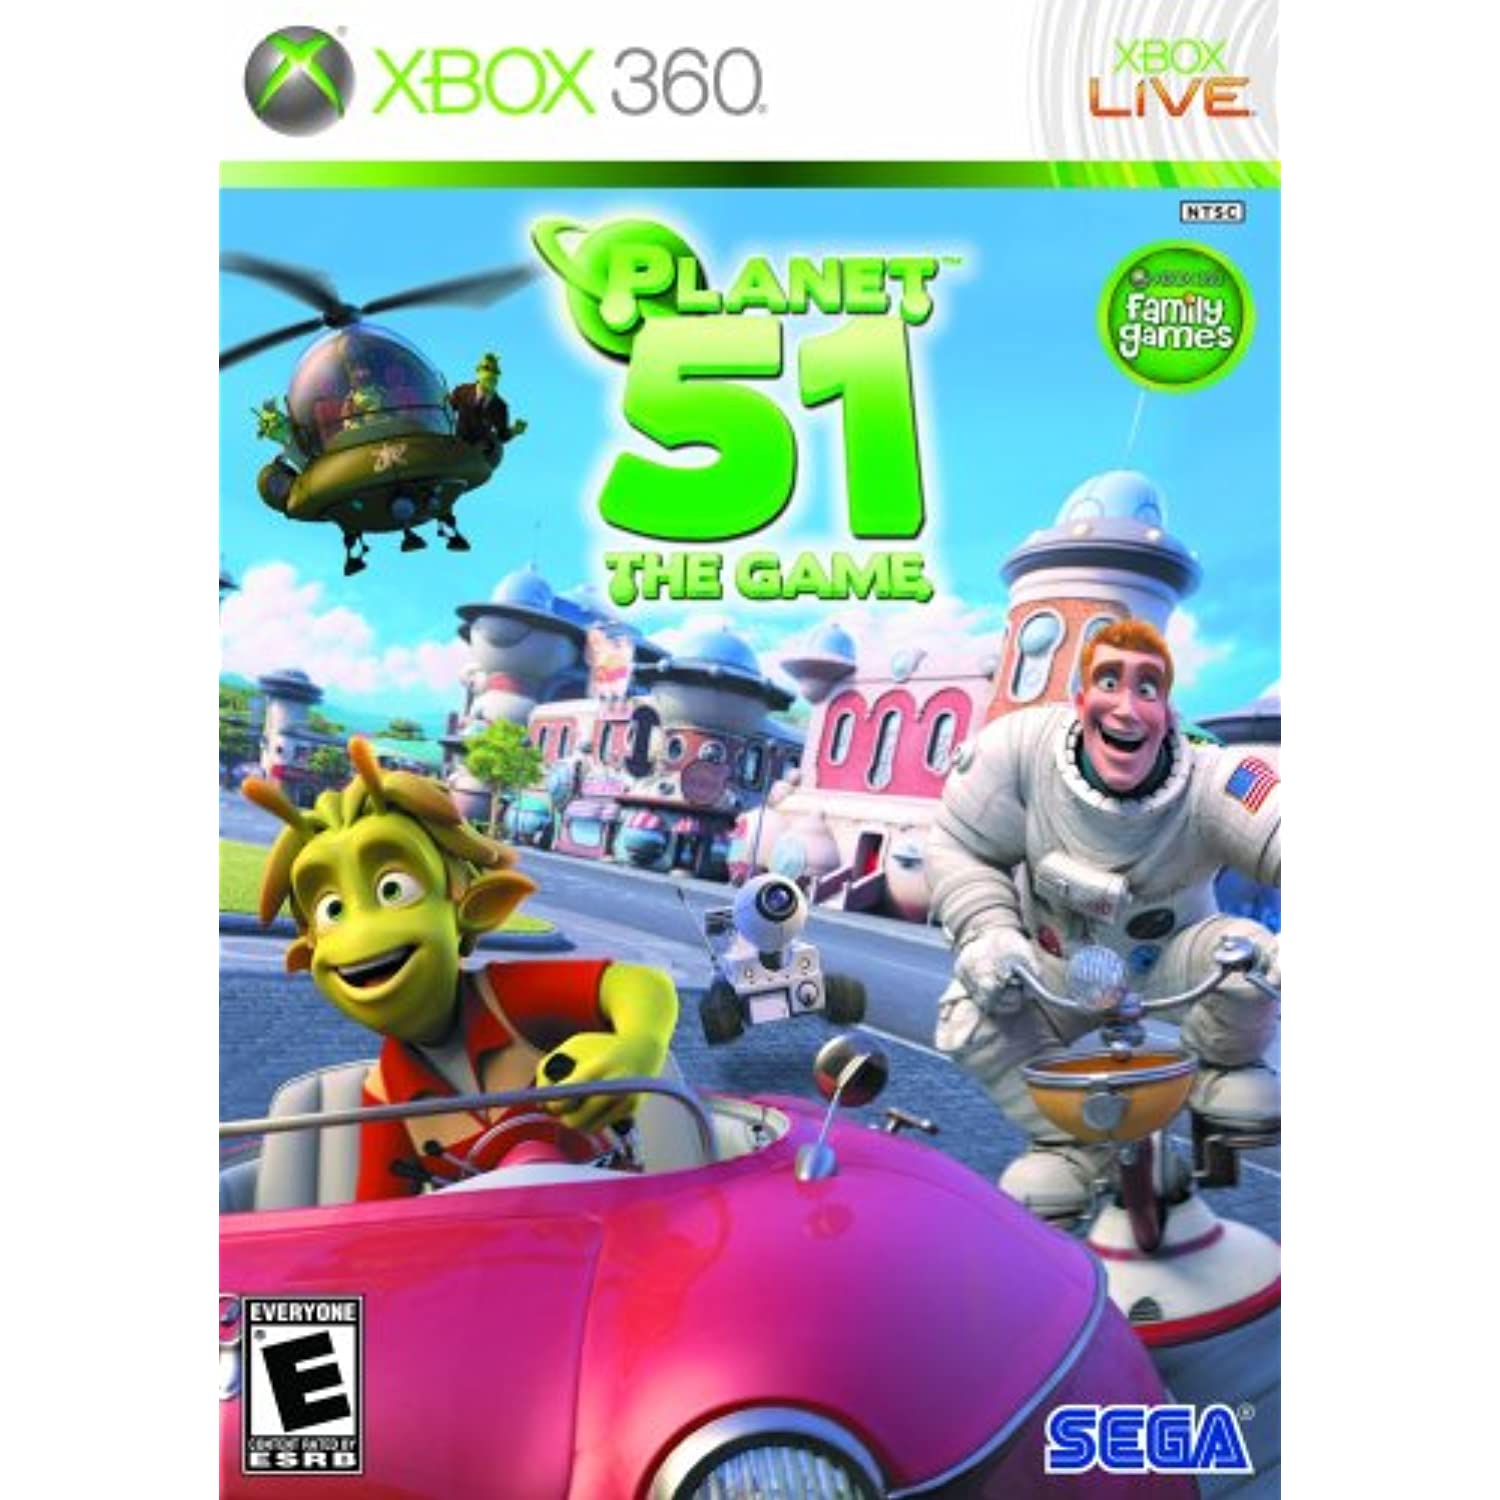 Planet 51 - Xbox 360 